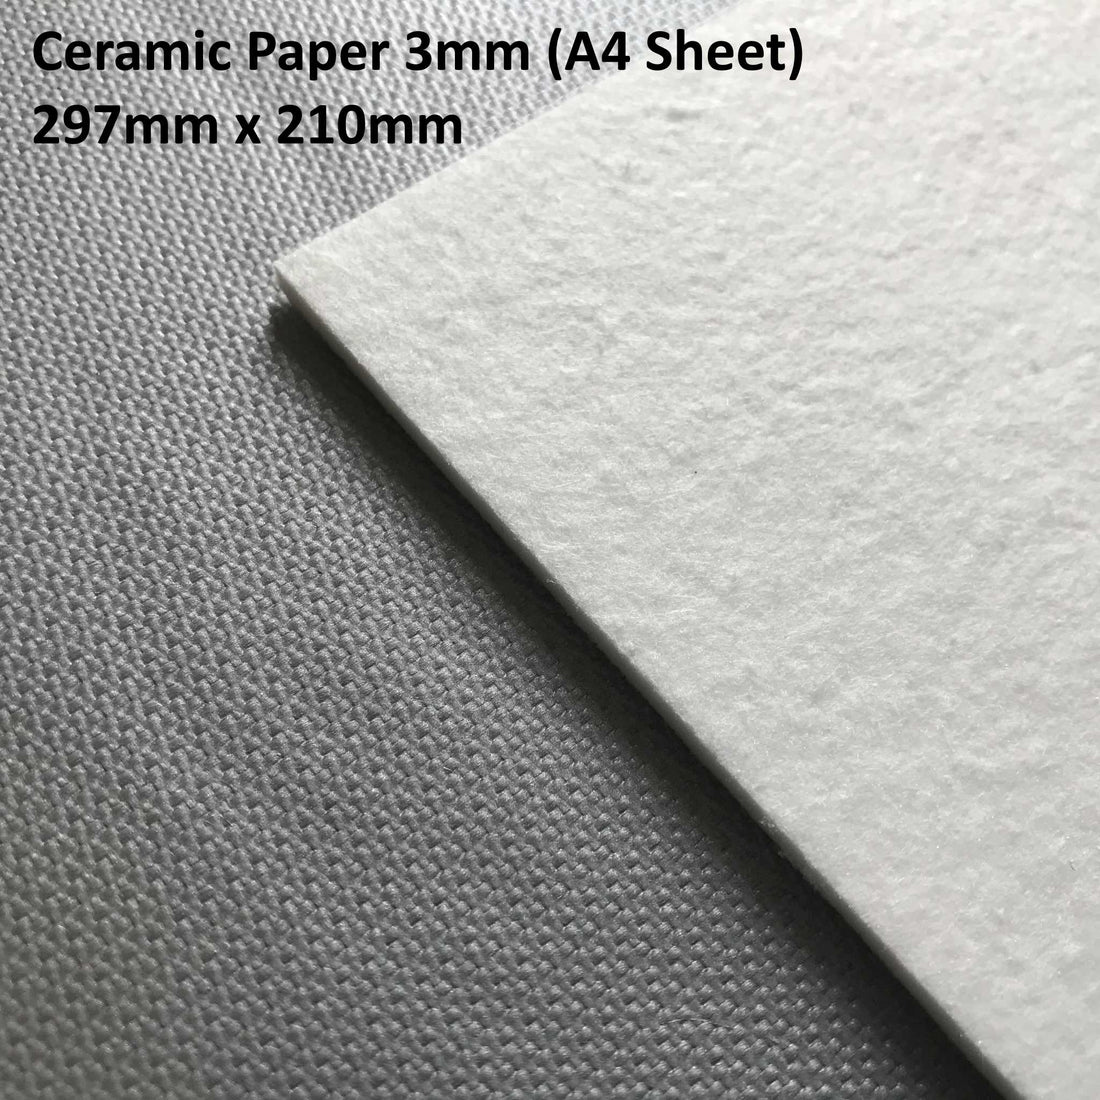 Exploring the Advantages and Applications of Ceramic Fibre Paper